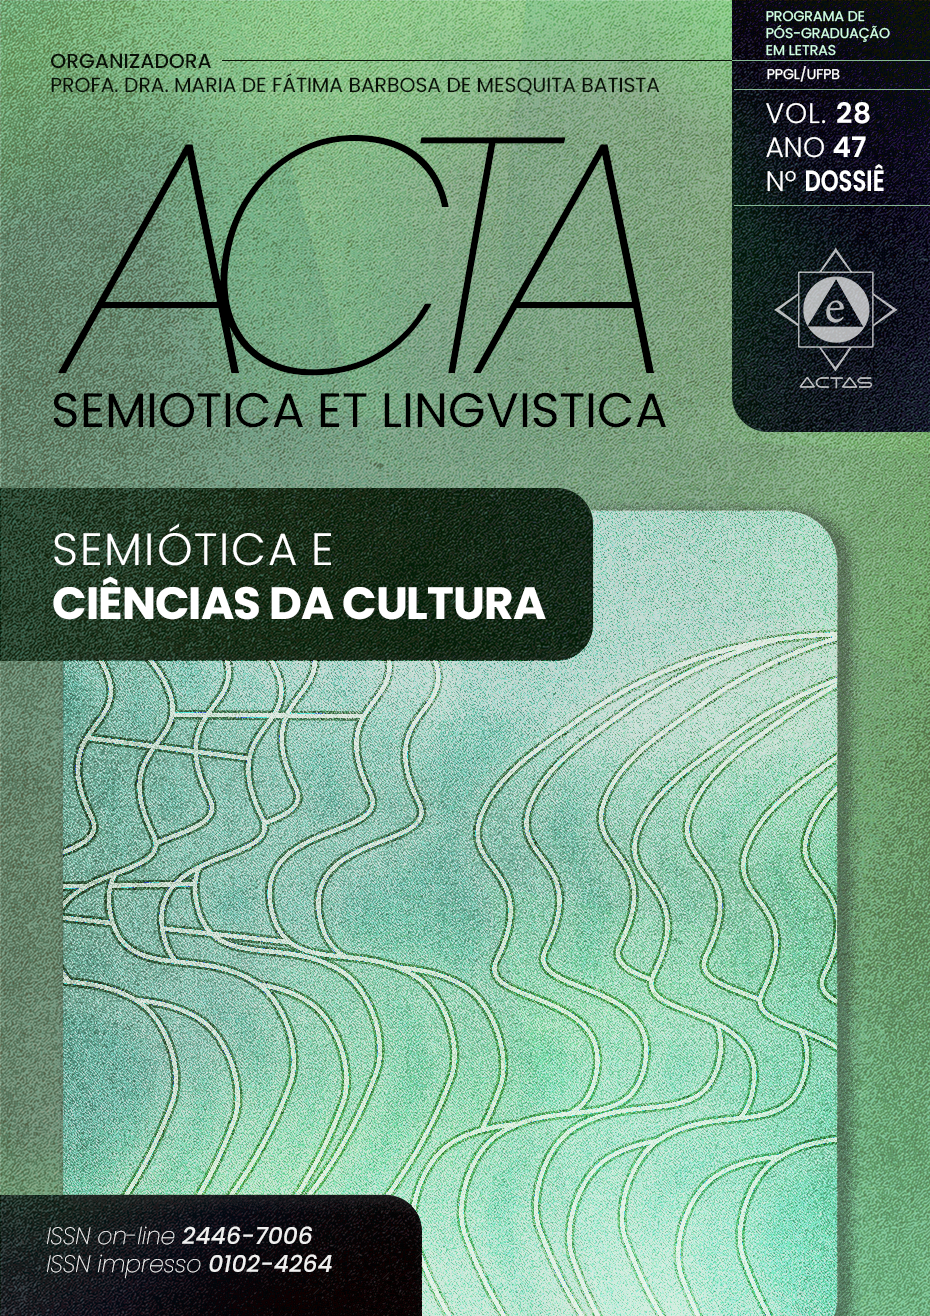 					Visualizar v. 28 n. 01 (47): Semiótica e ciências da cultura
				